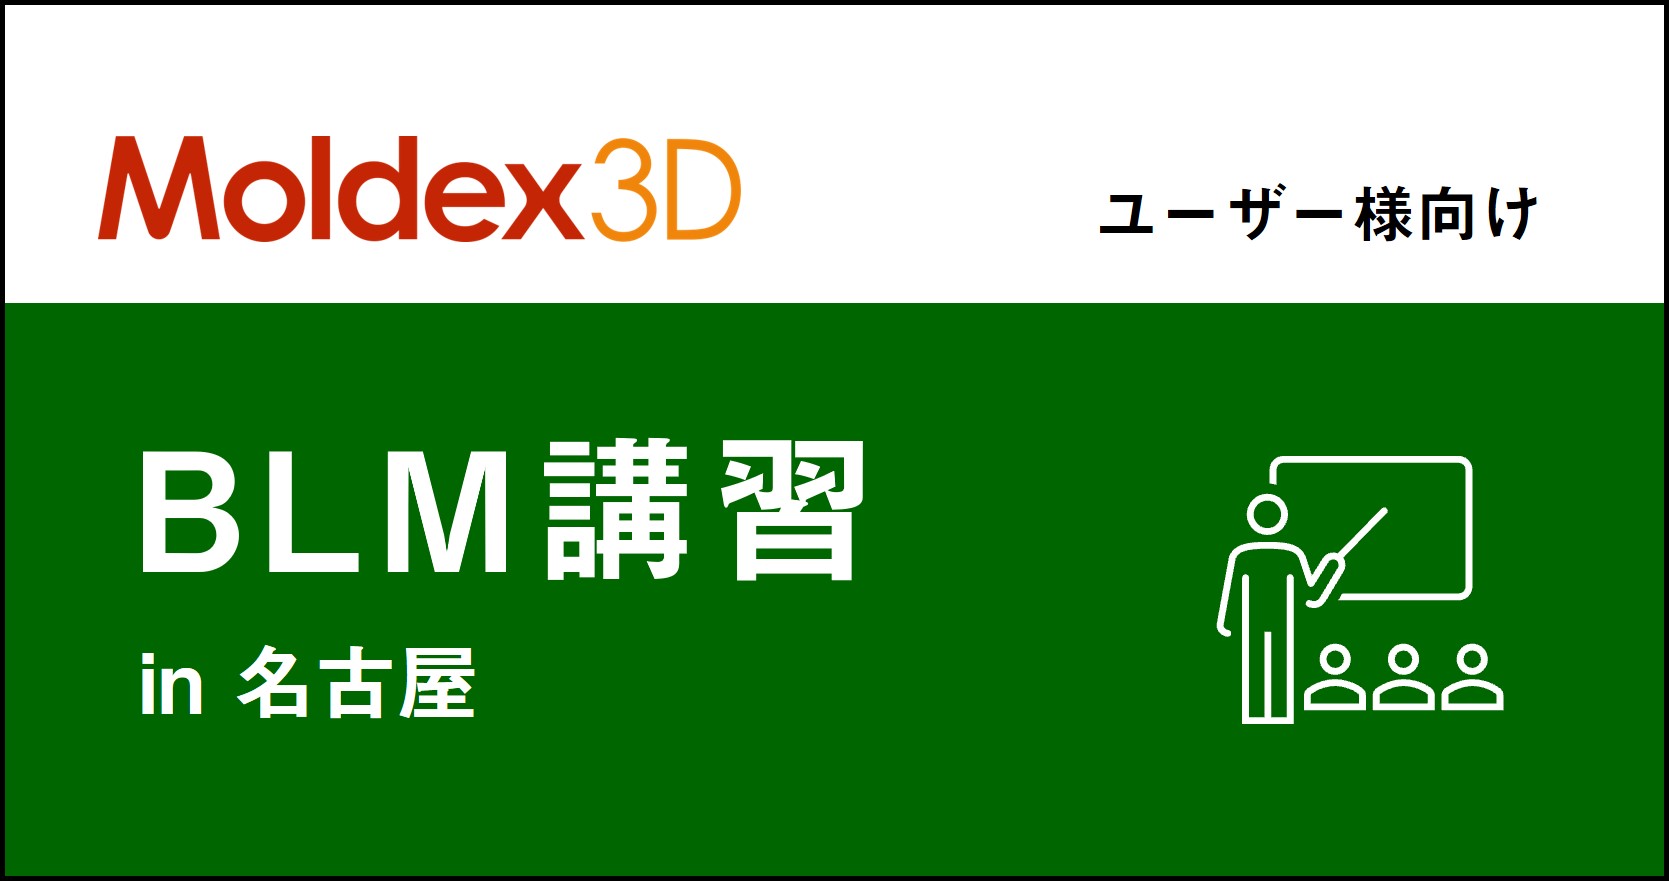 【名古屋】1~3月 Moldex3D/ BLM 講習 ※旧「Designer BLM講習」